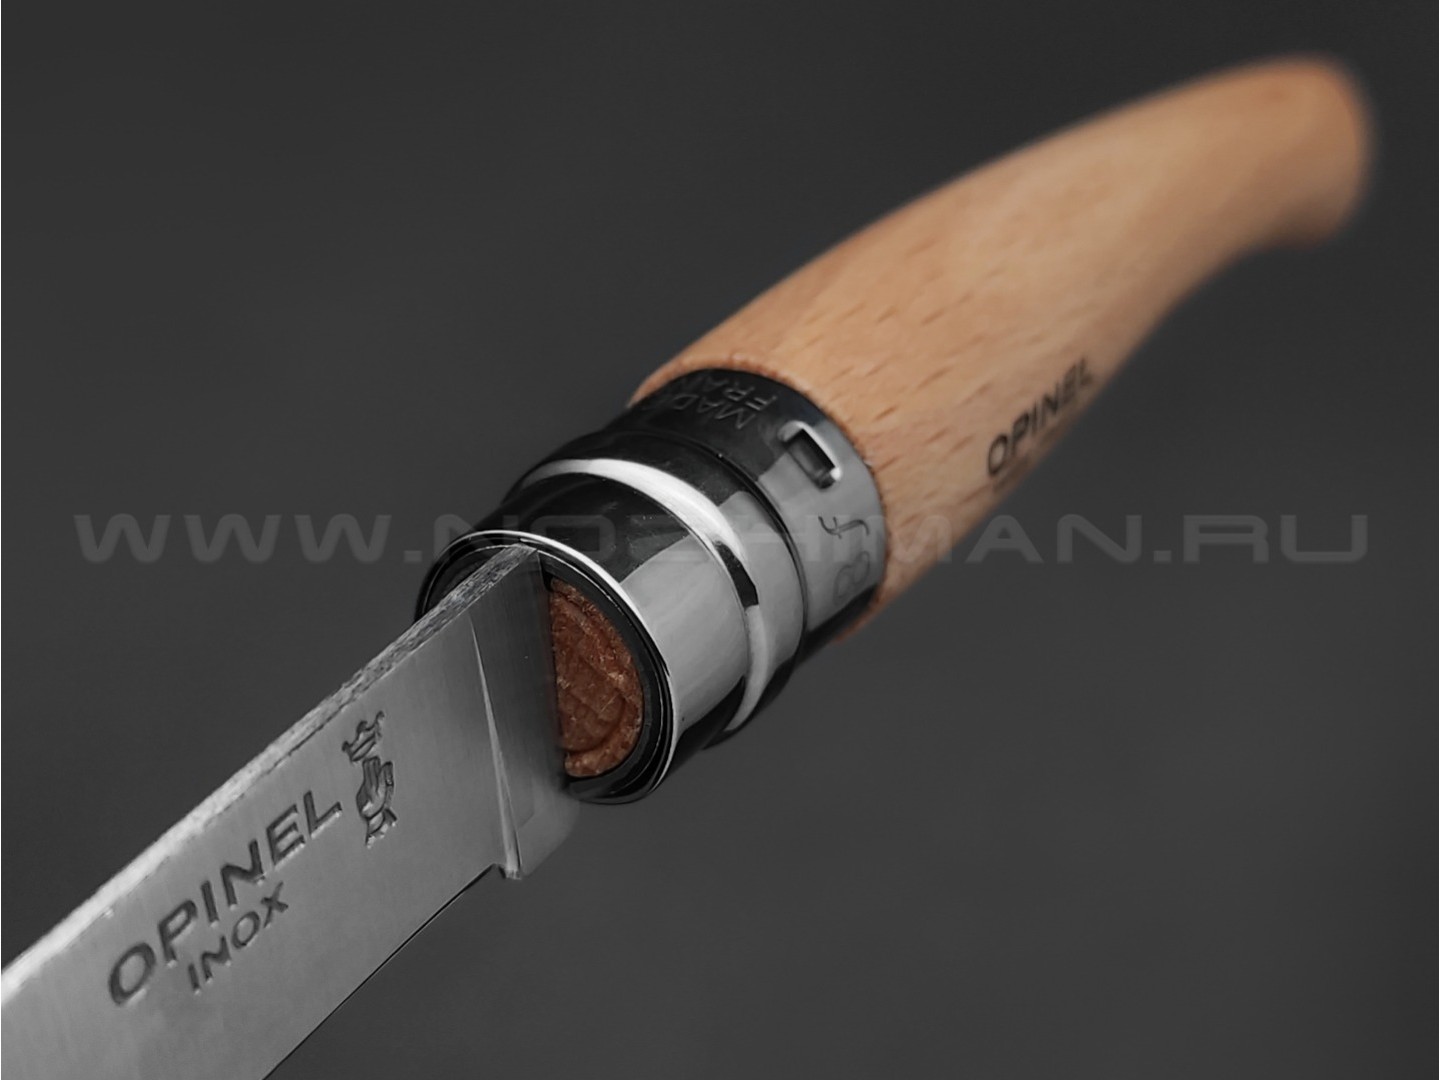 Нож Opinel складной филейный №8 000516 сталь Sandvik 12C27, рукоять бук